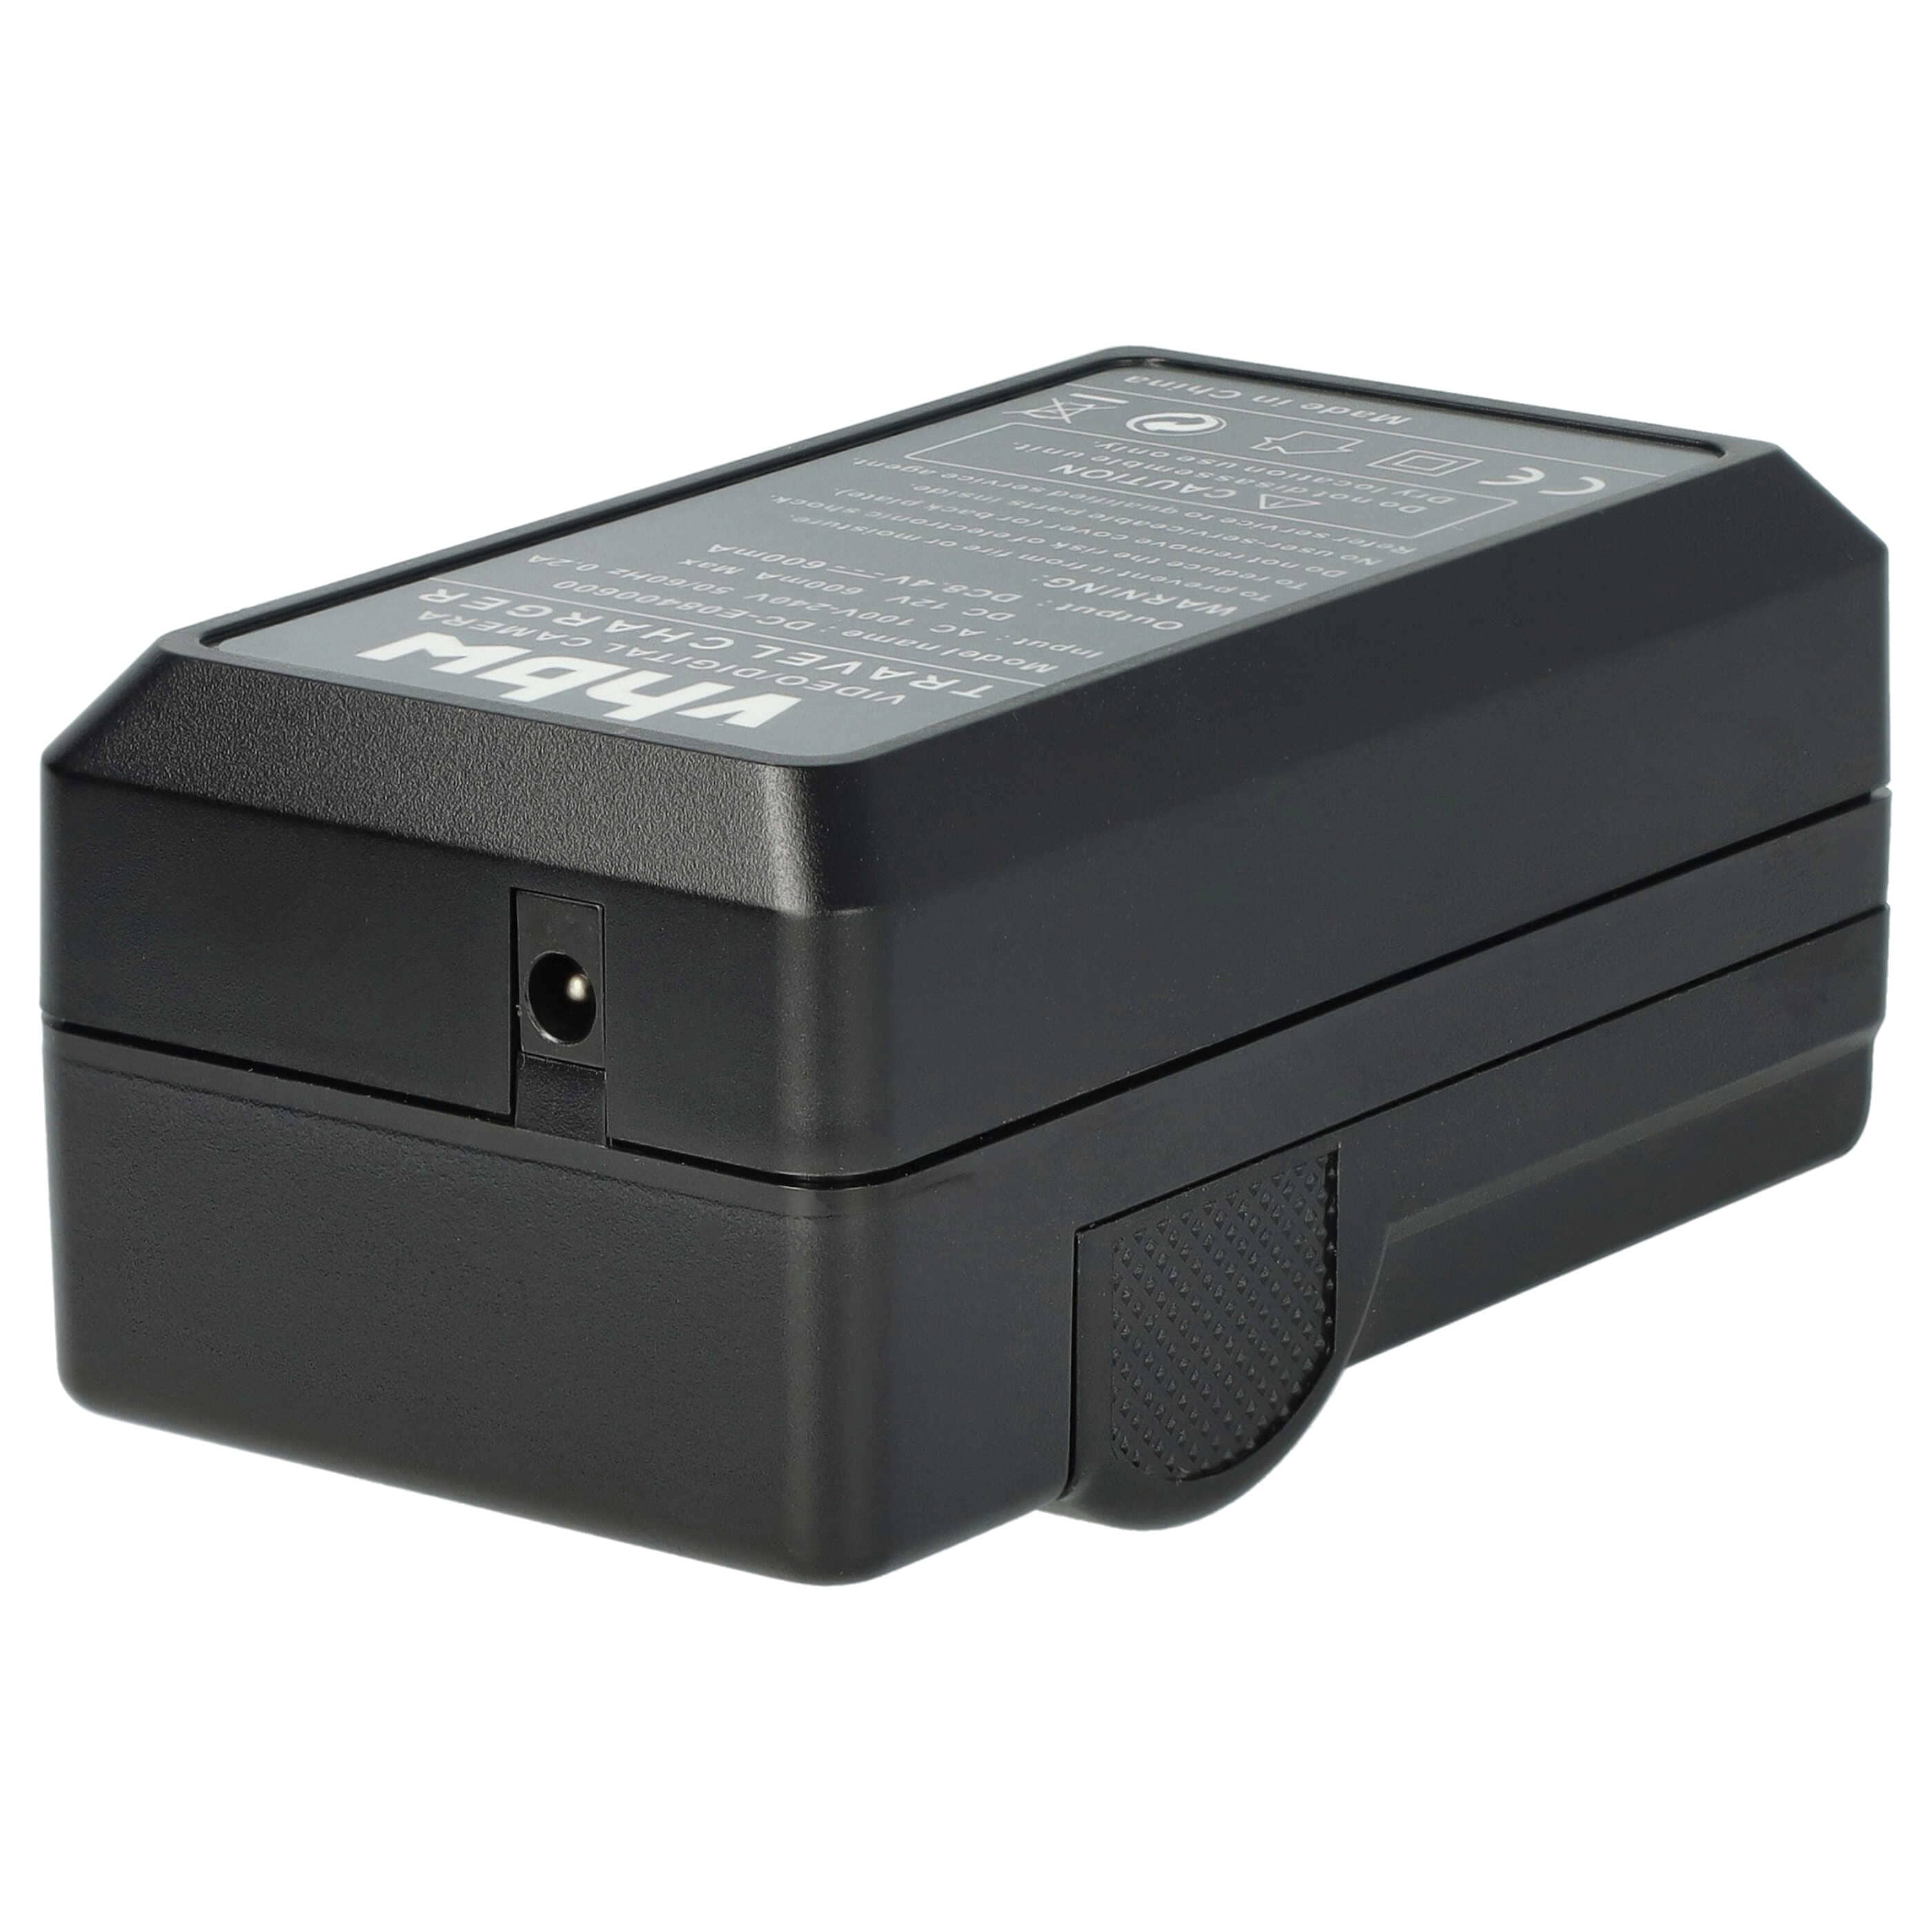 Akku Ladegerät passend für HS900 Kamera u.a. - 0,6 A, 8,4 V